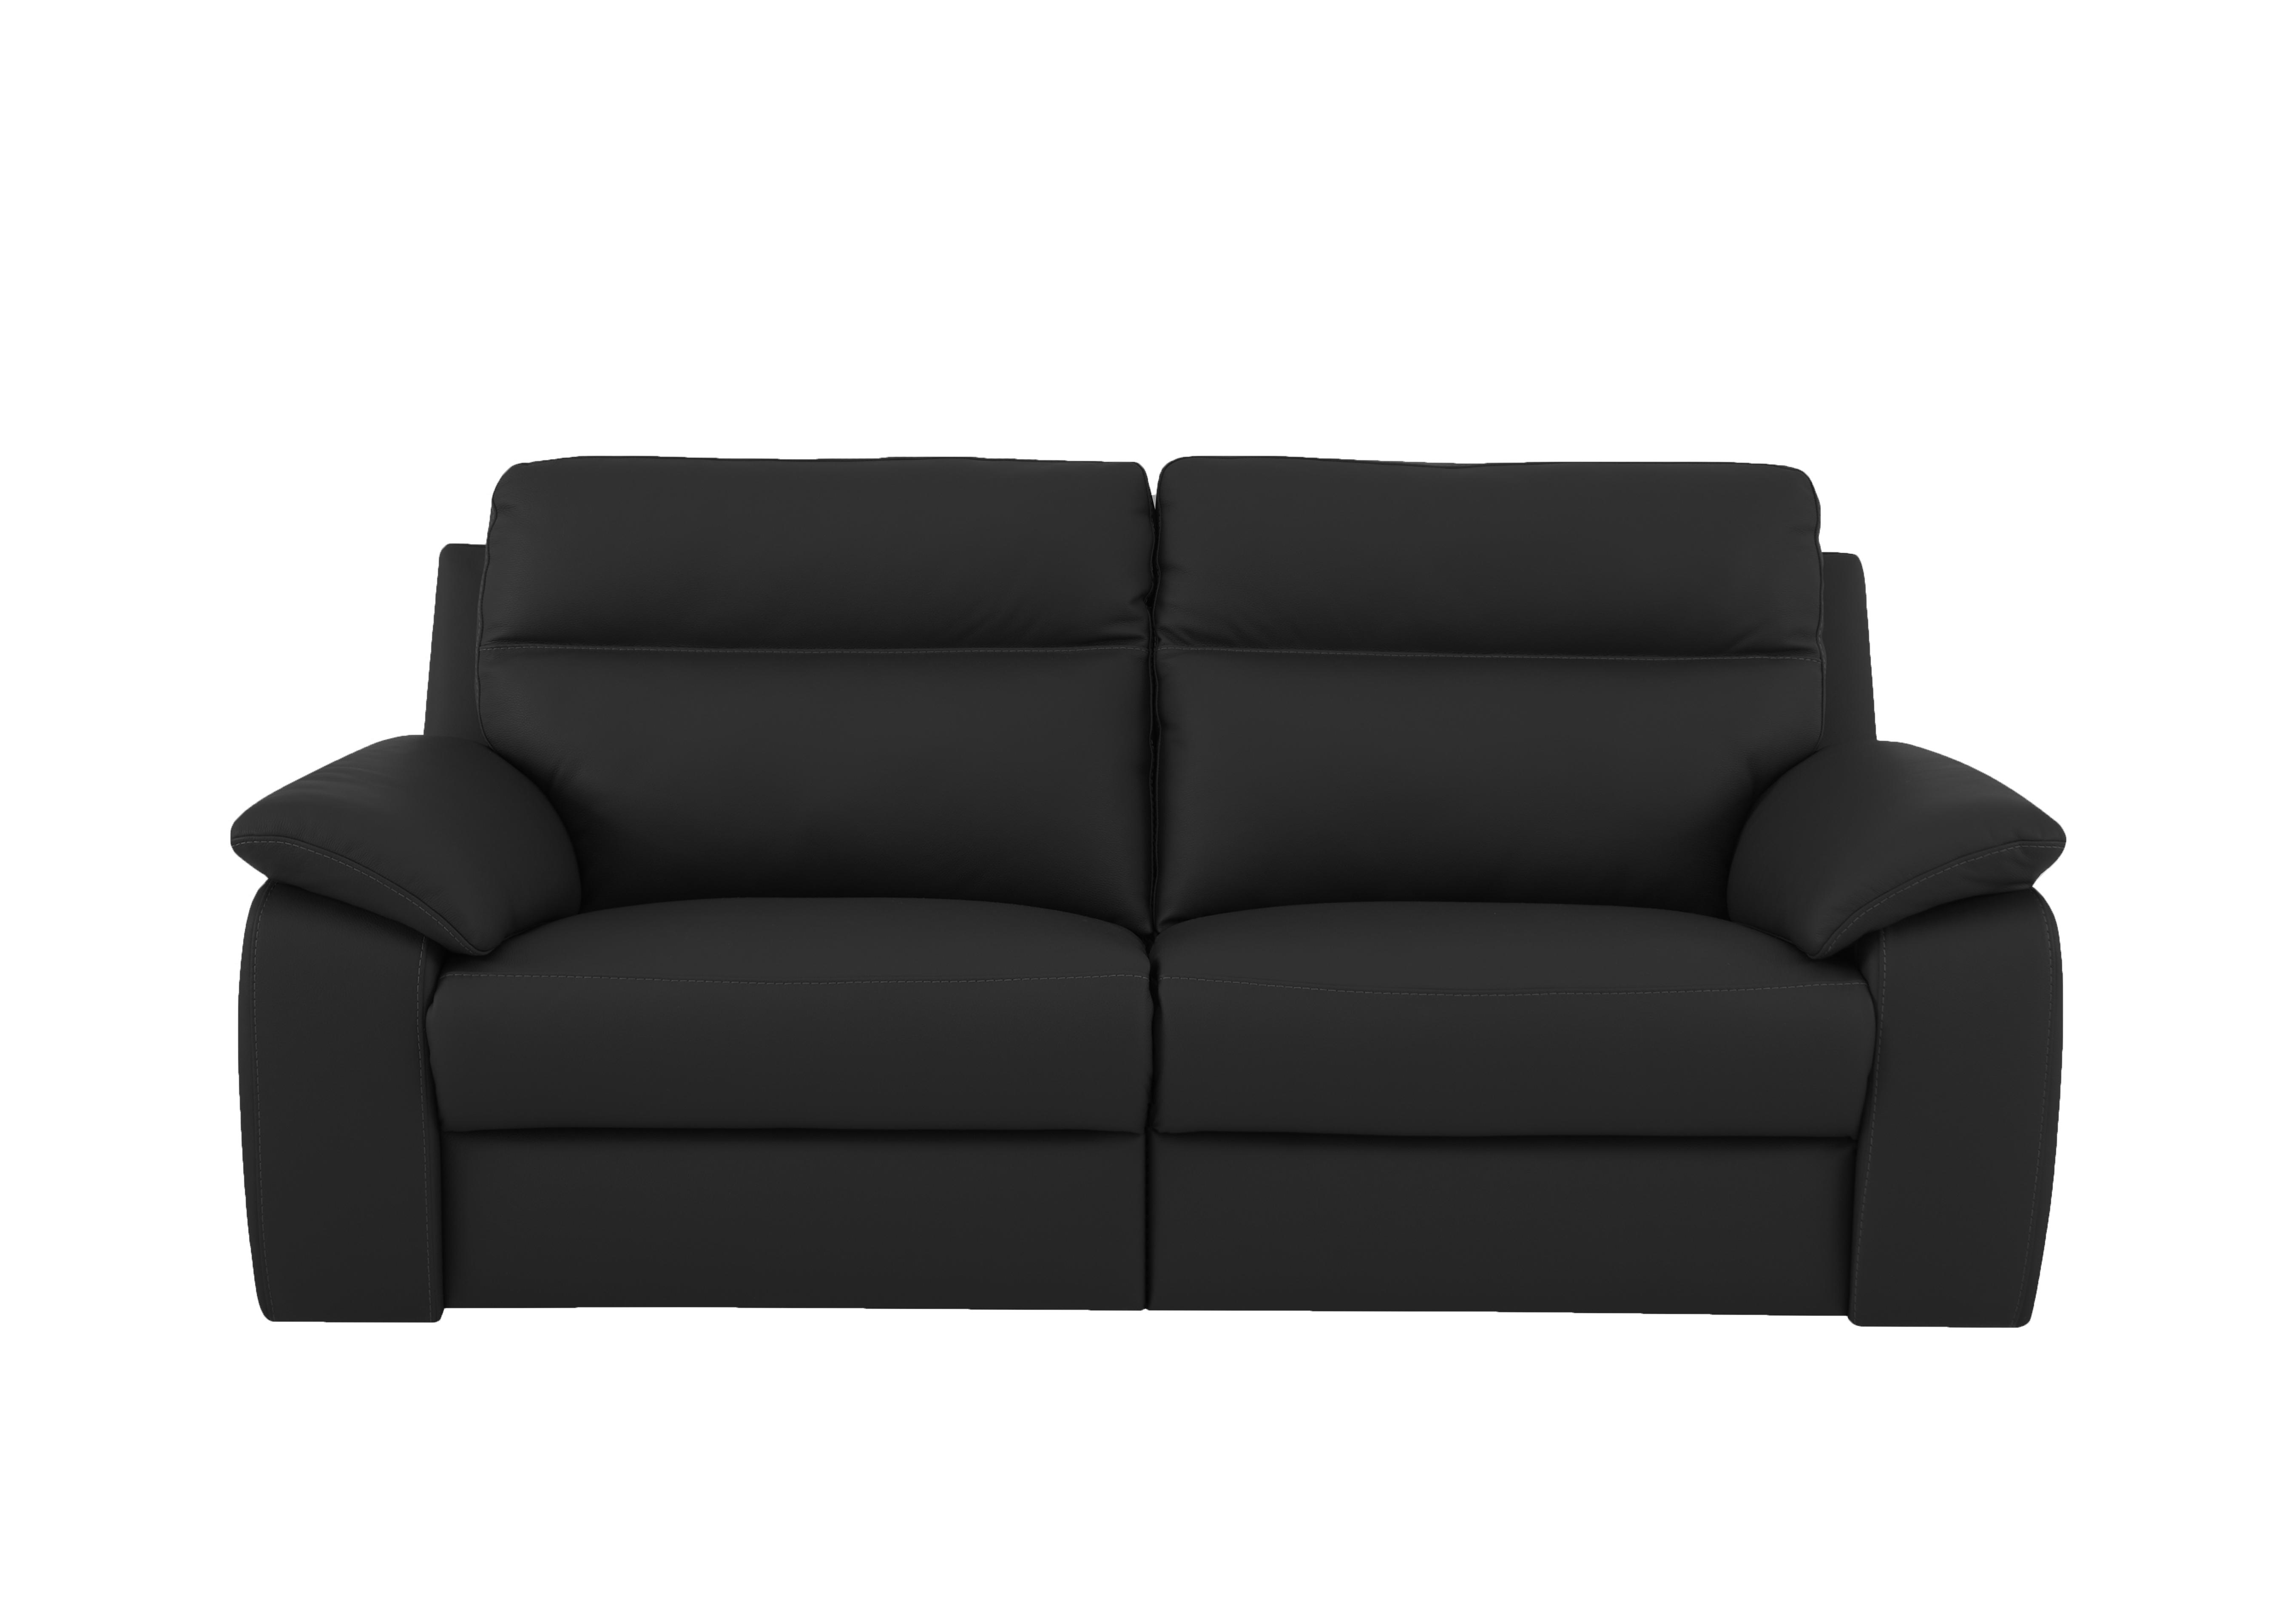 Pepino 3 Seater Leather Sofa in 71 Torello Nero on Furniture Village